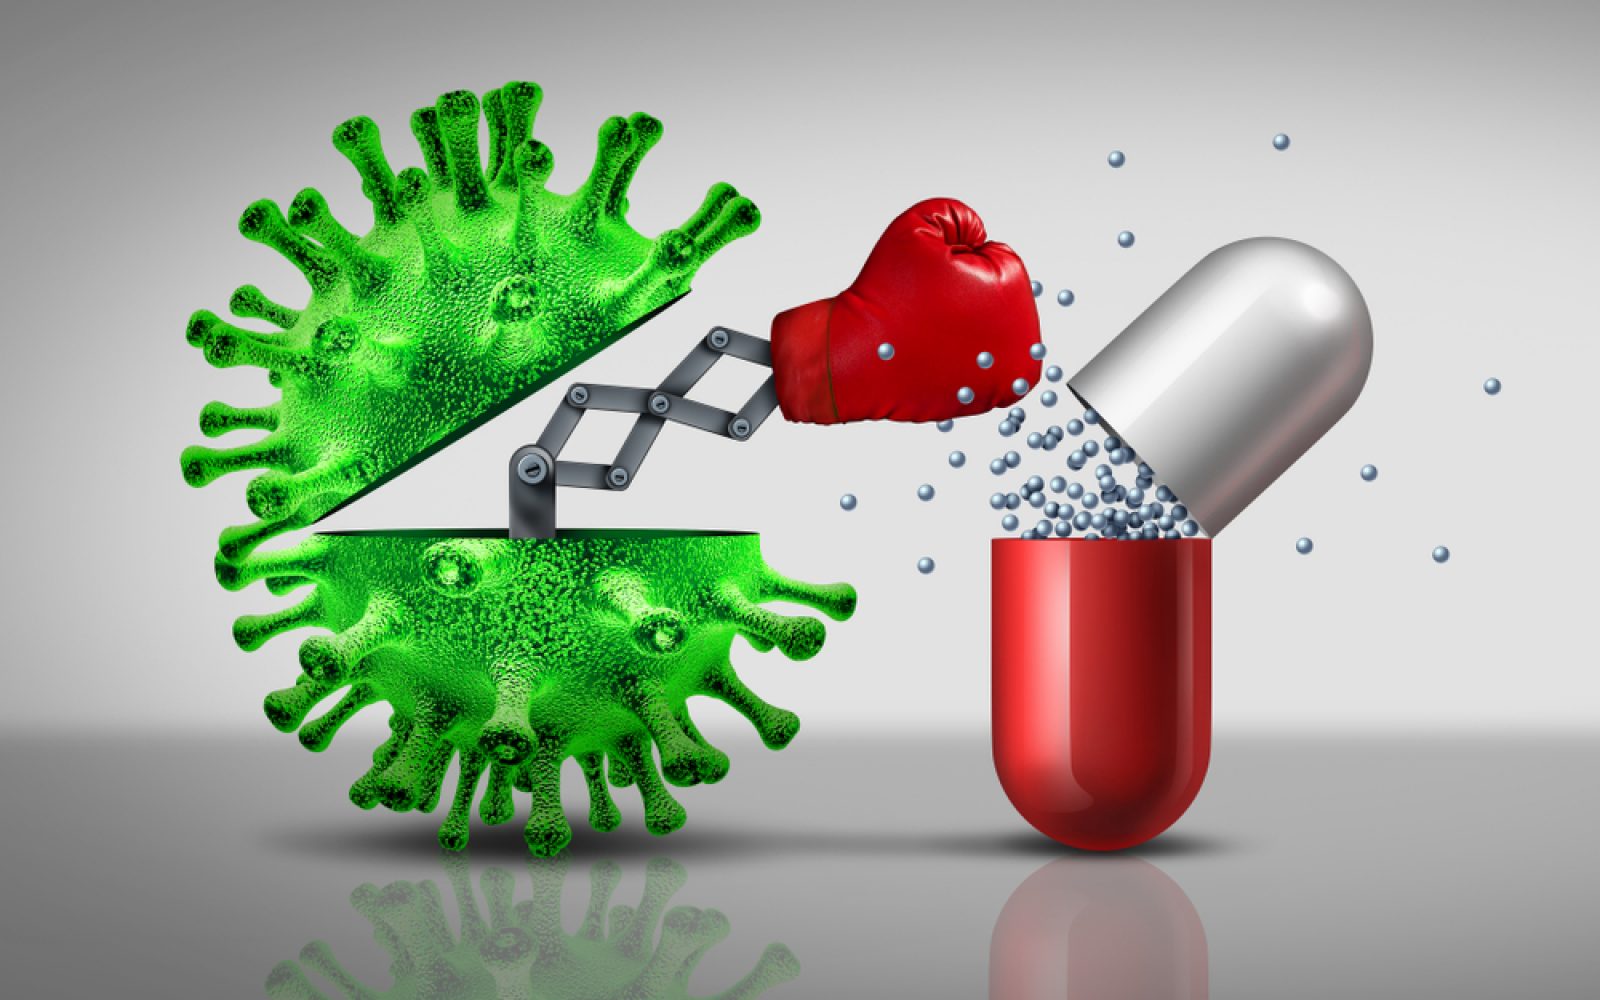 Na sliki je umetniška upodobitev boja med virusom in zdravilom. Zelena virusna celica je prikazana kot kovinska škatla z robotsko roko, ki nosi rdečo boksarsko rokavico in udarja proti kapsuli zdravila. Iz kapsule izhajajo majhne modre kroglice, kar ponazarja sproščanje zdravilnih učinkovin. Ozadje je sivo in preprosto, kar poudarja osrednji motiv boja med virusom in zdravilom.